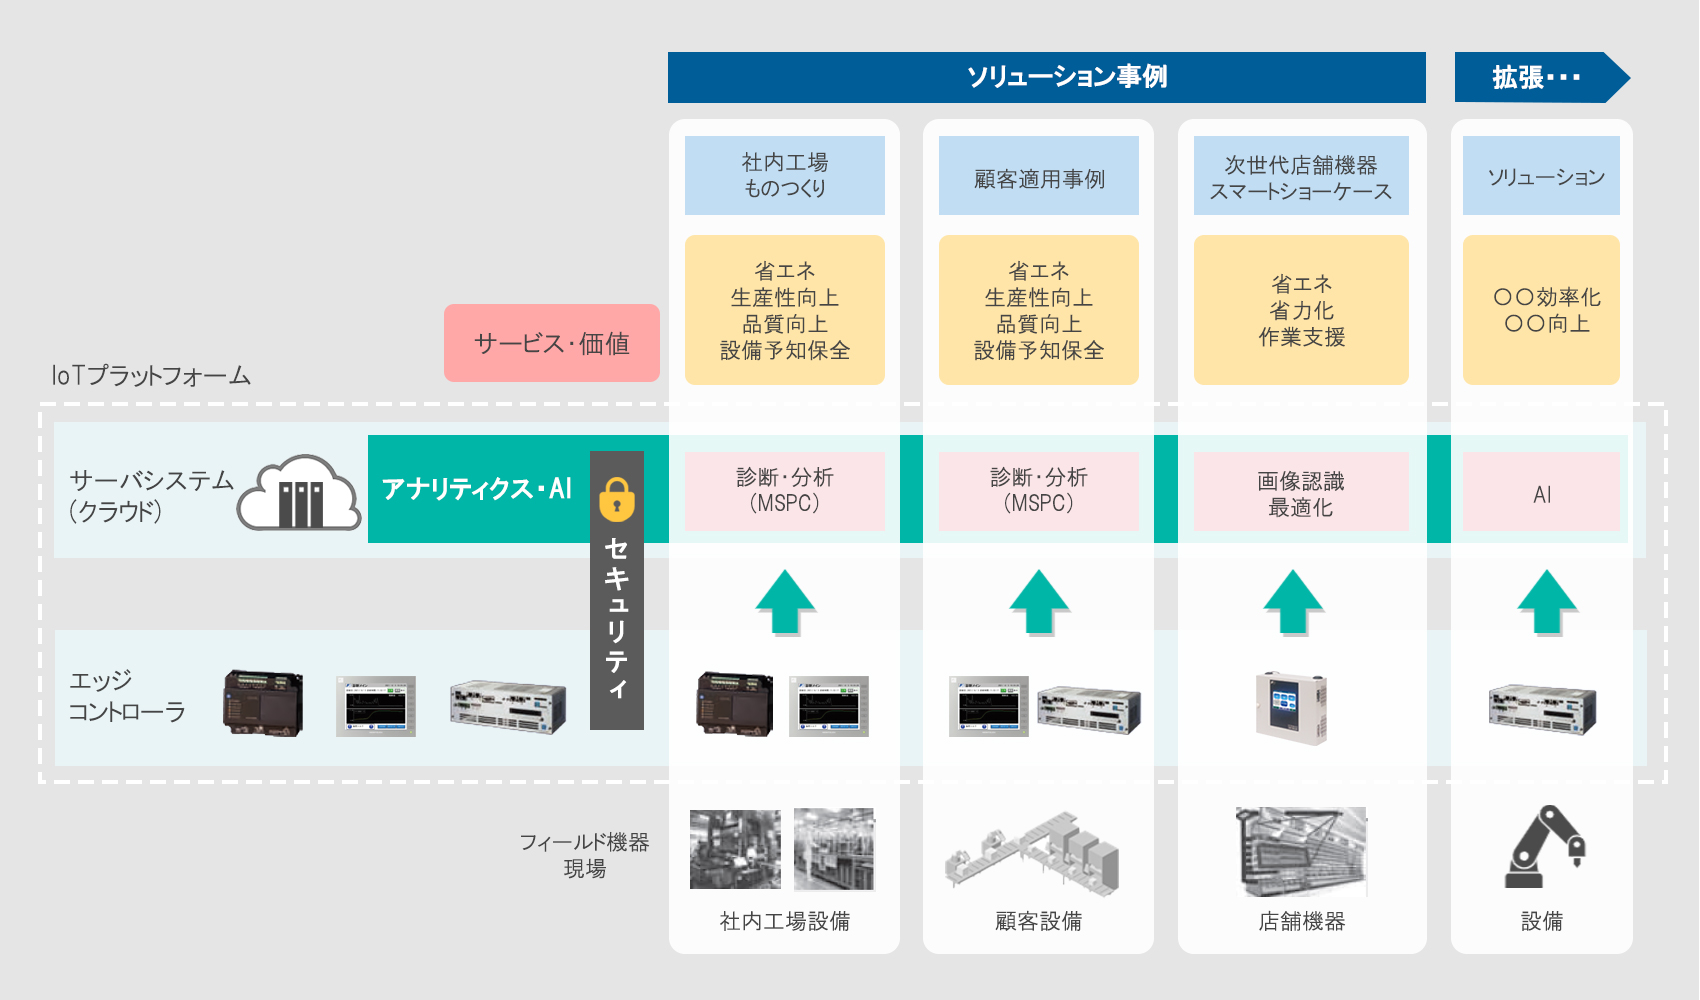 富士電機IoTシステムの全体像